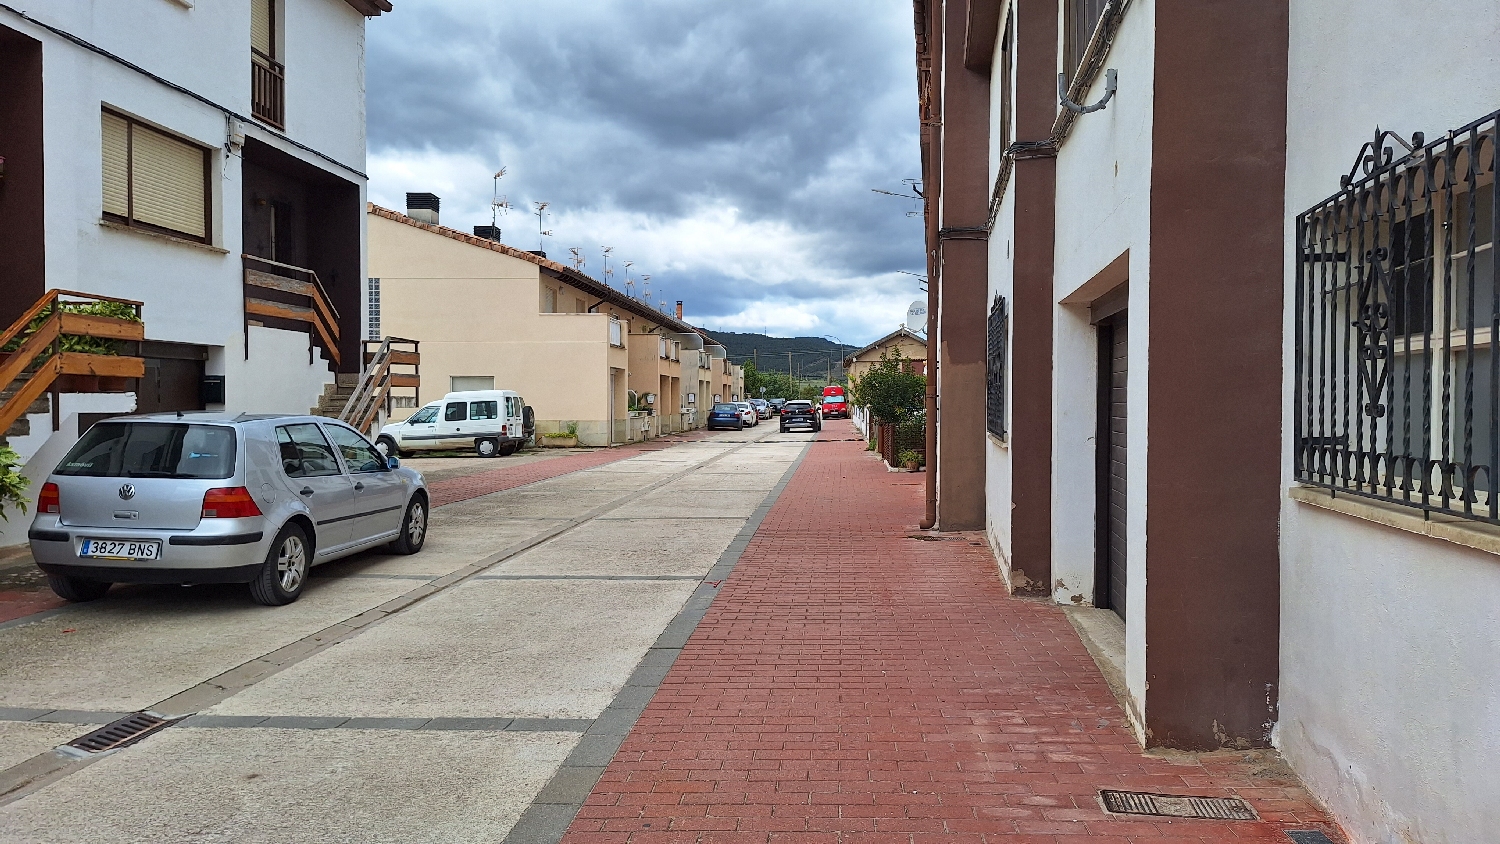 El Camino, Aragon út, kisvárosi út